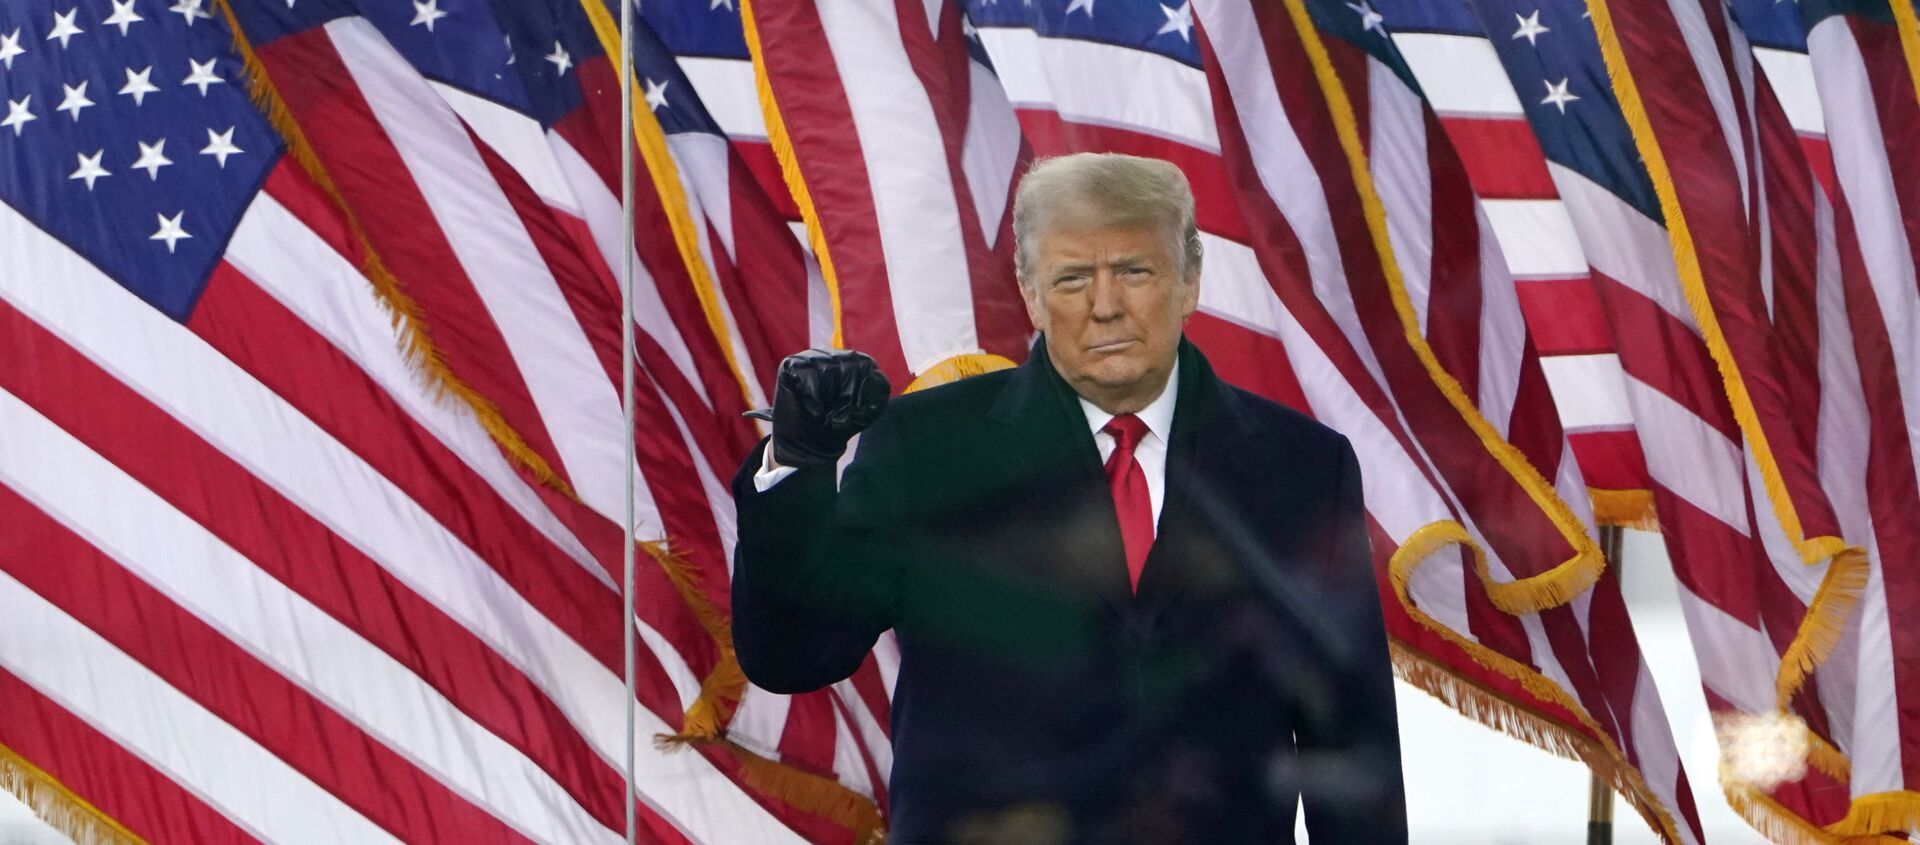 Tổng thống Donald Trump đến để phát biểu tại một cuộc biểu tình vào thứ Tư, ngày 6 tháng 1 năm 2021, ở Washington. (Ảnh AP / Jacquelyn Martin) - Sputnik Việt Nam, 1920, 01.02.2021